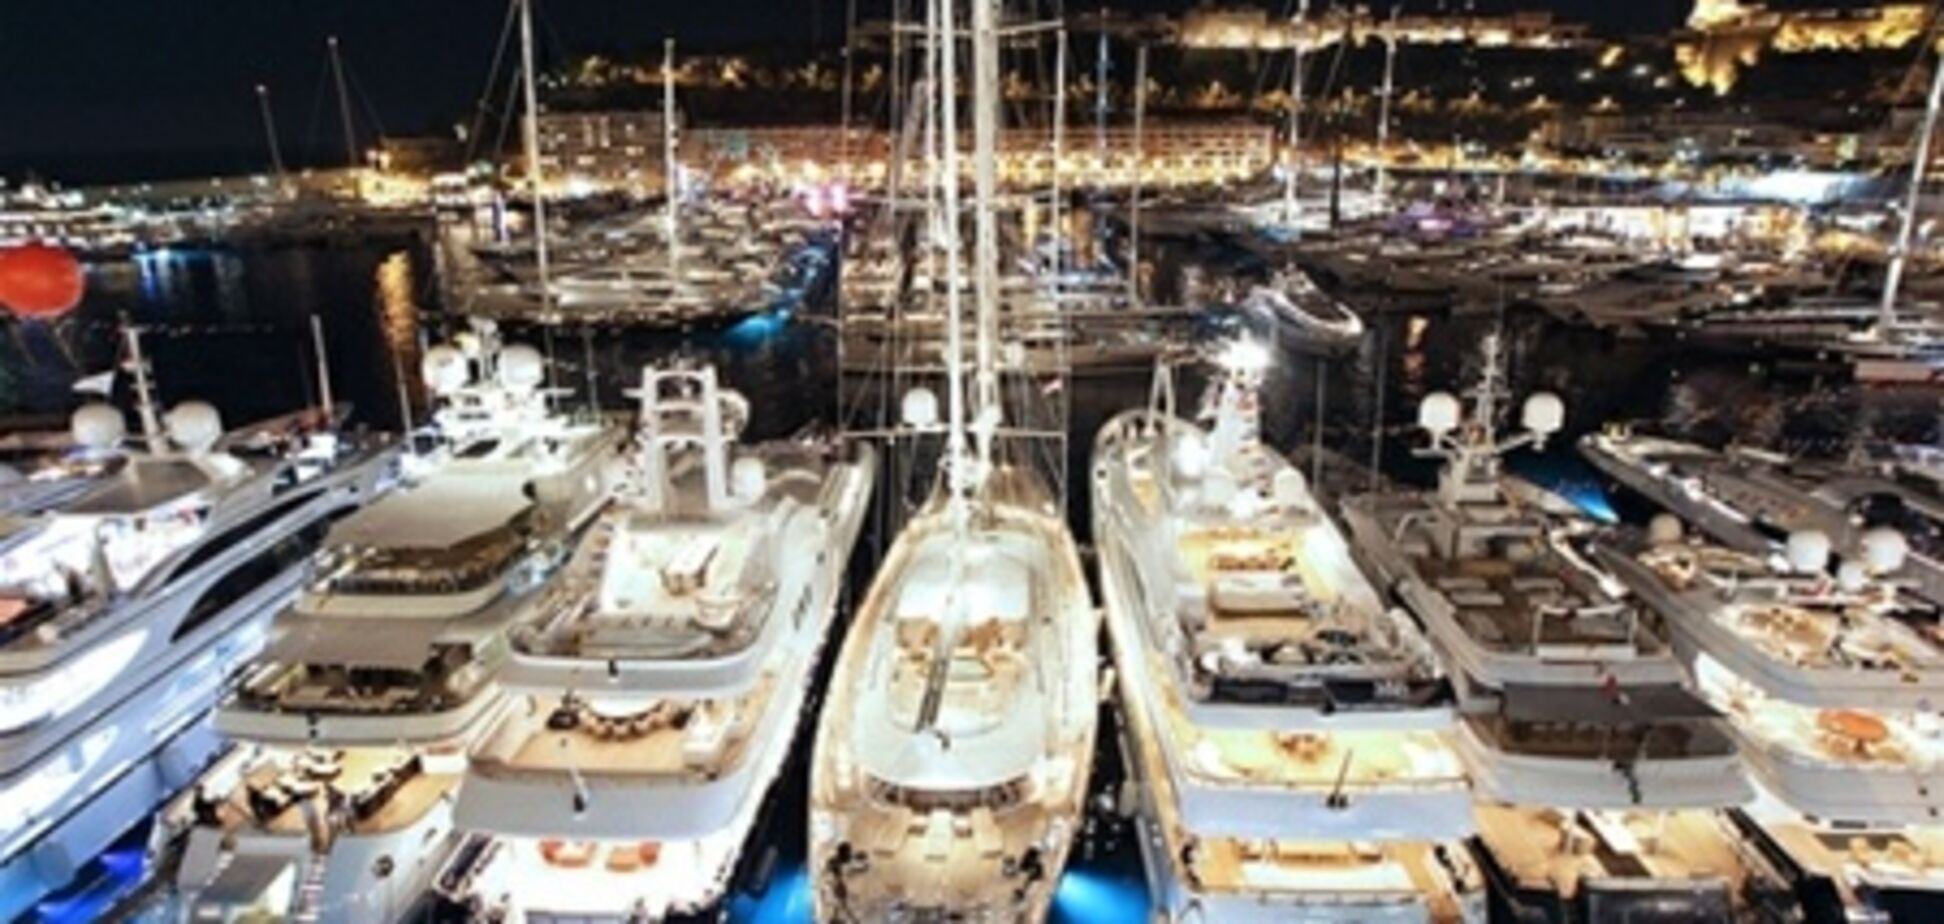 Лучшие яхты мира соберутся в монакском порту Эркюль